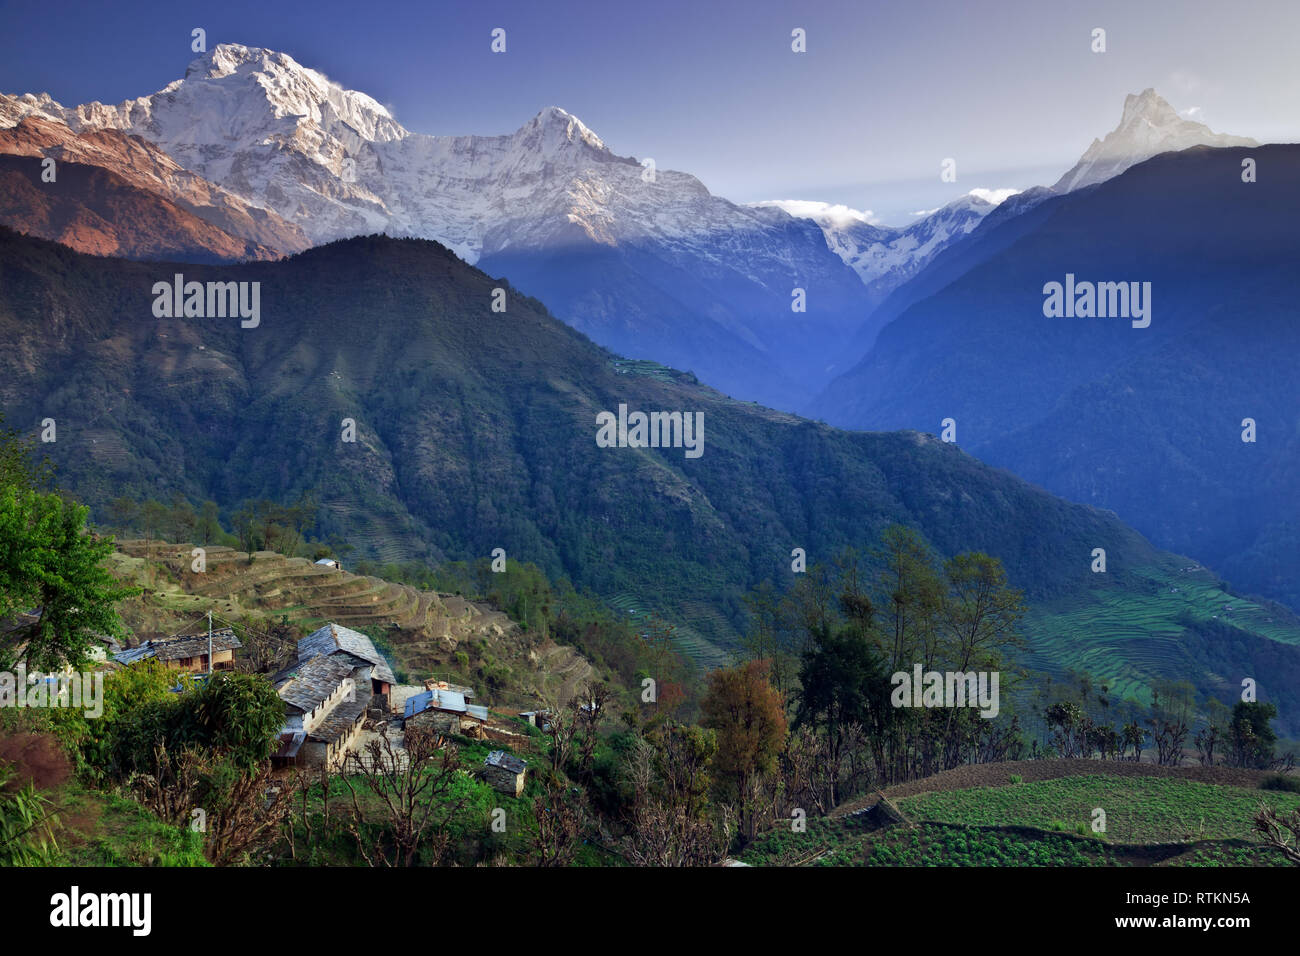 Ghandruk villaggio nella regione di Annapurna del Nepal Foto Stock